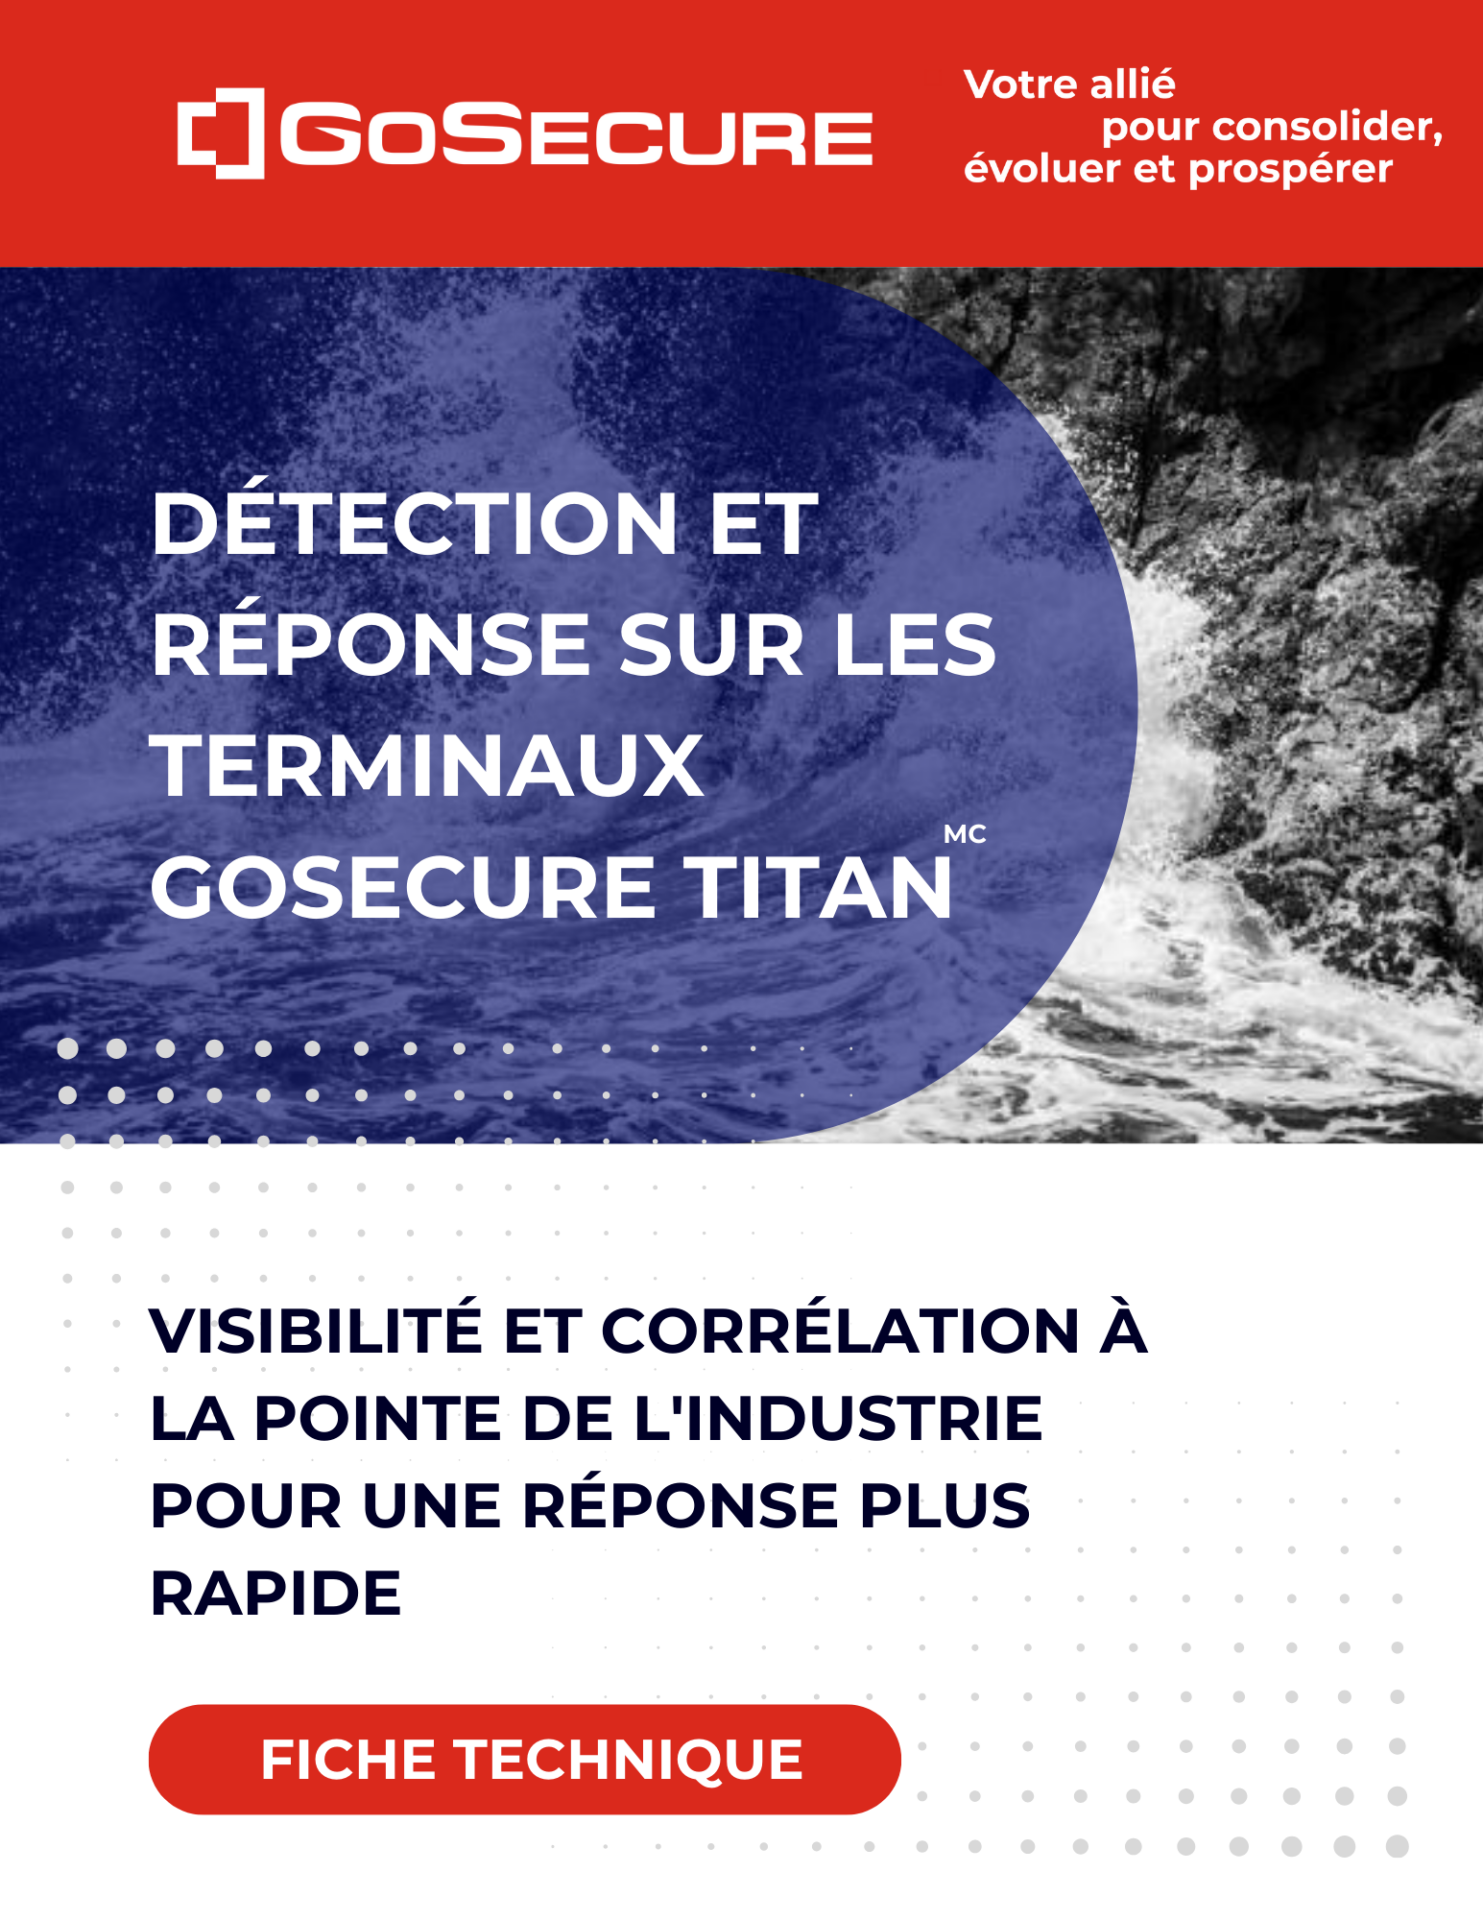 Image de couverture-Fiche technique-Détection et réponse sur les terminaux GoSecure Titan